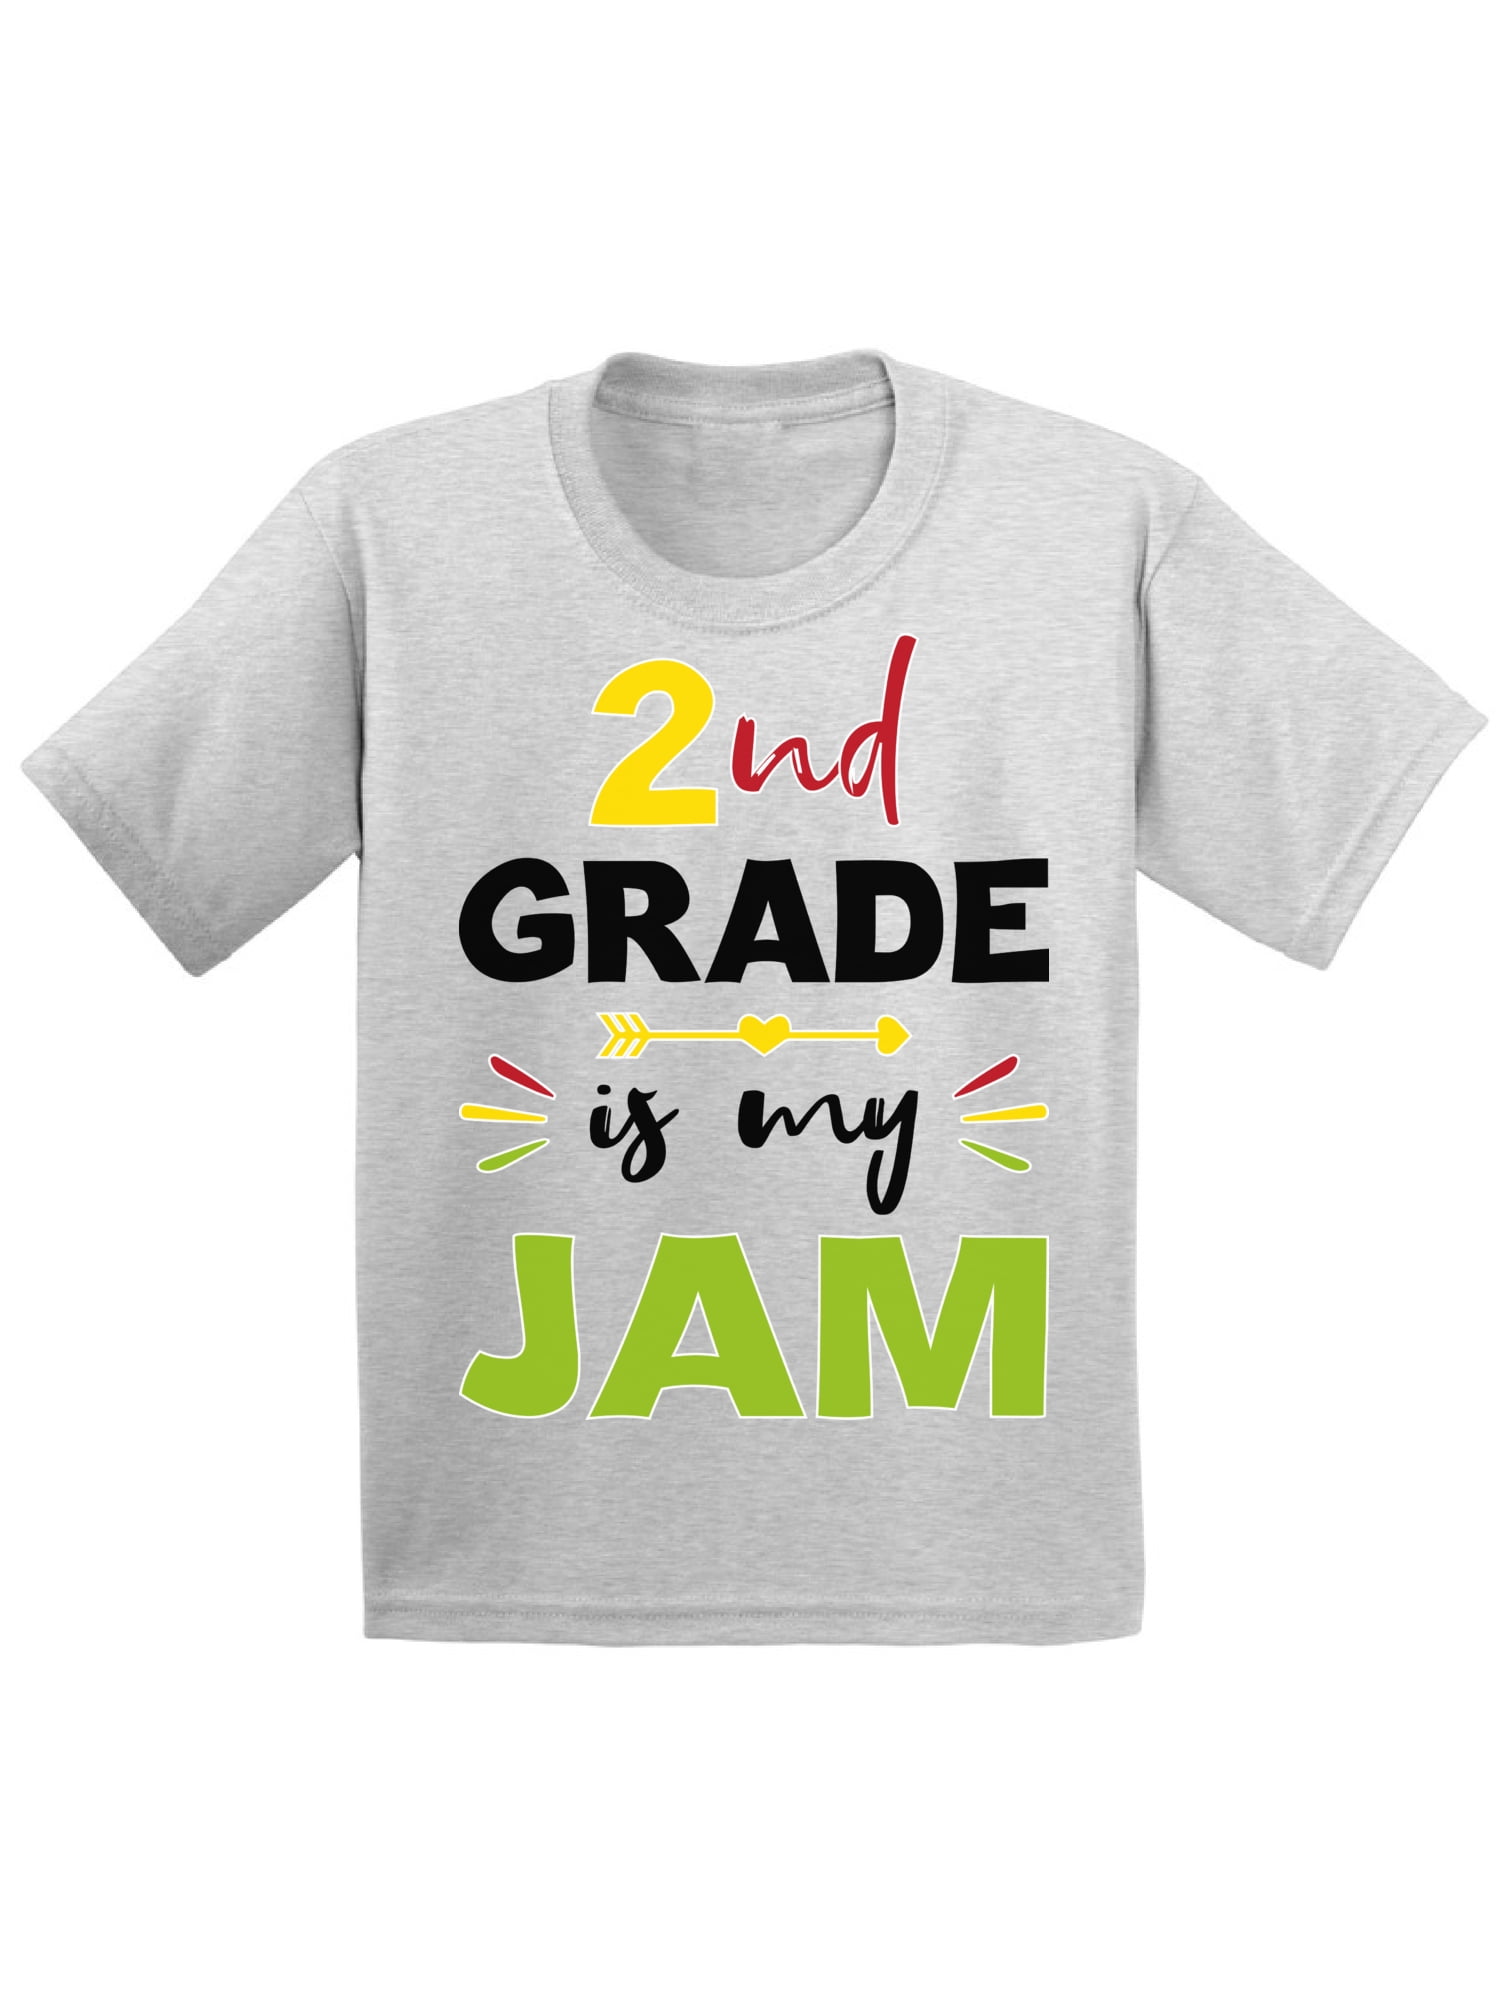 2nd Grade Shirt Back To School Shirt Second Grade Team Shirt First Day Of School Shirt Second Grade Teacher Shirt Second Grade Shirt